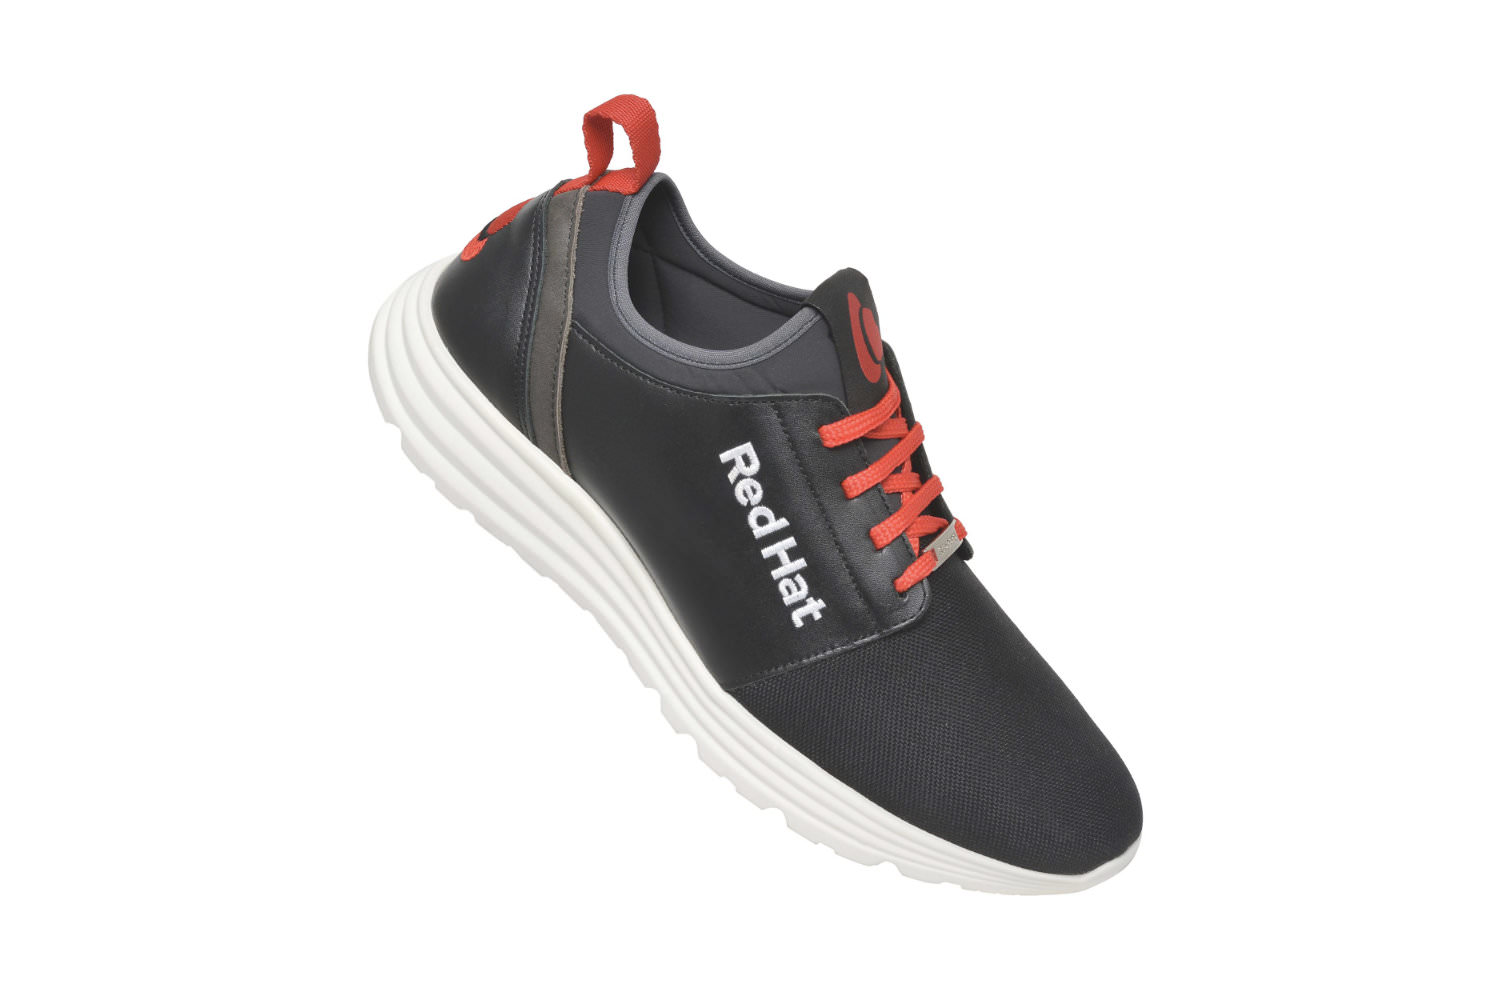 Sneaker Draco für Firmen Messeschuhe individuelle Anfertigung im Kundendesign, Modell Draco in schwarz-rot mit weißer Stickerei